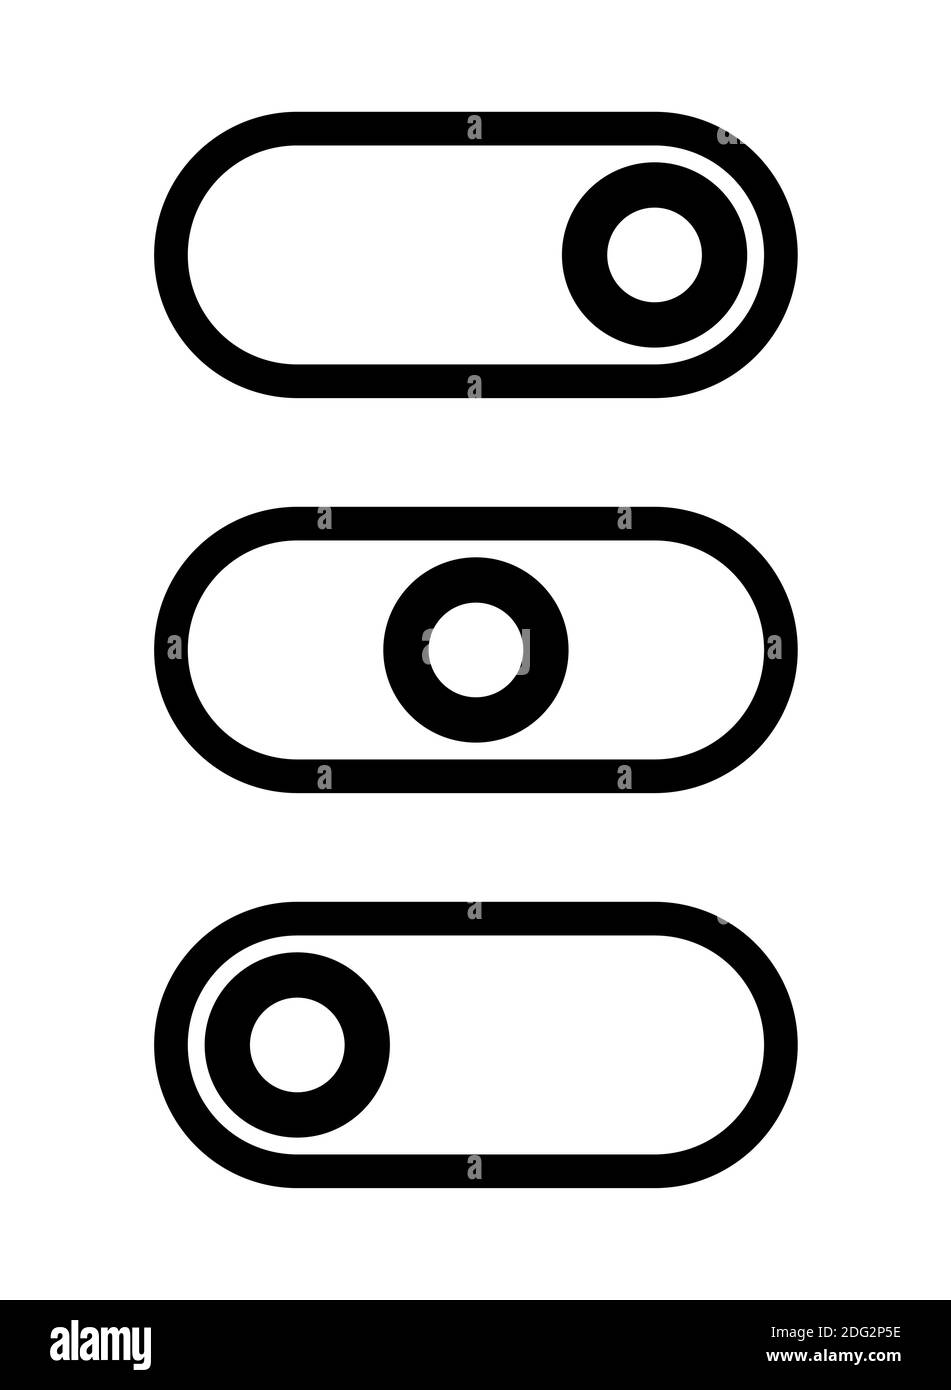 Pulsante dell'interruttore di accensione/spegnimento o icona del cursore impostata. Immagine vettoriale. Illustrazione Vettoriale